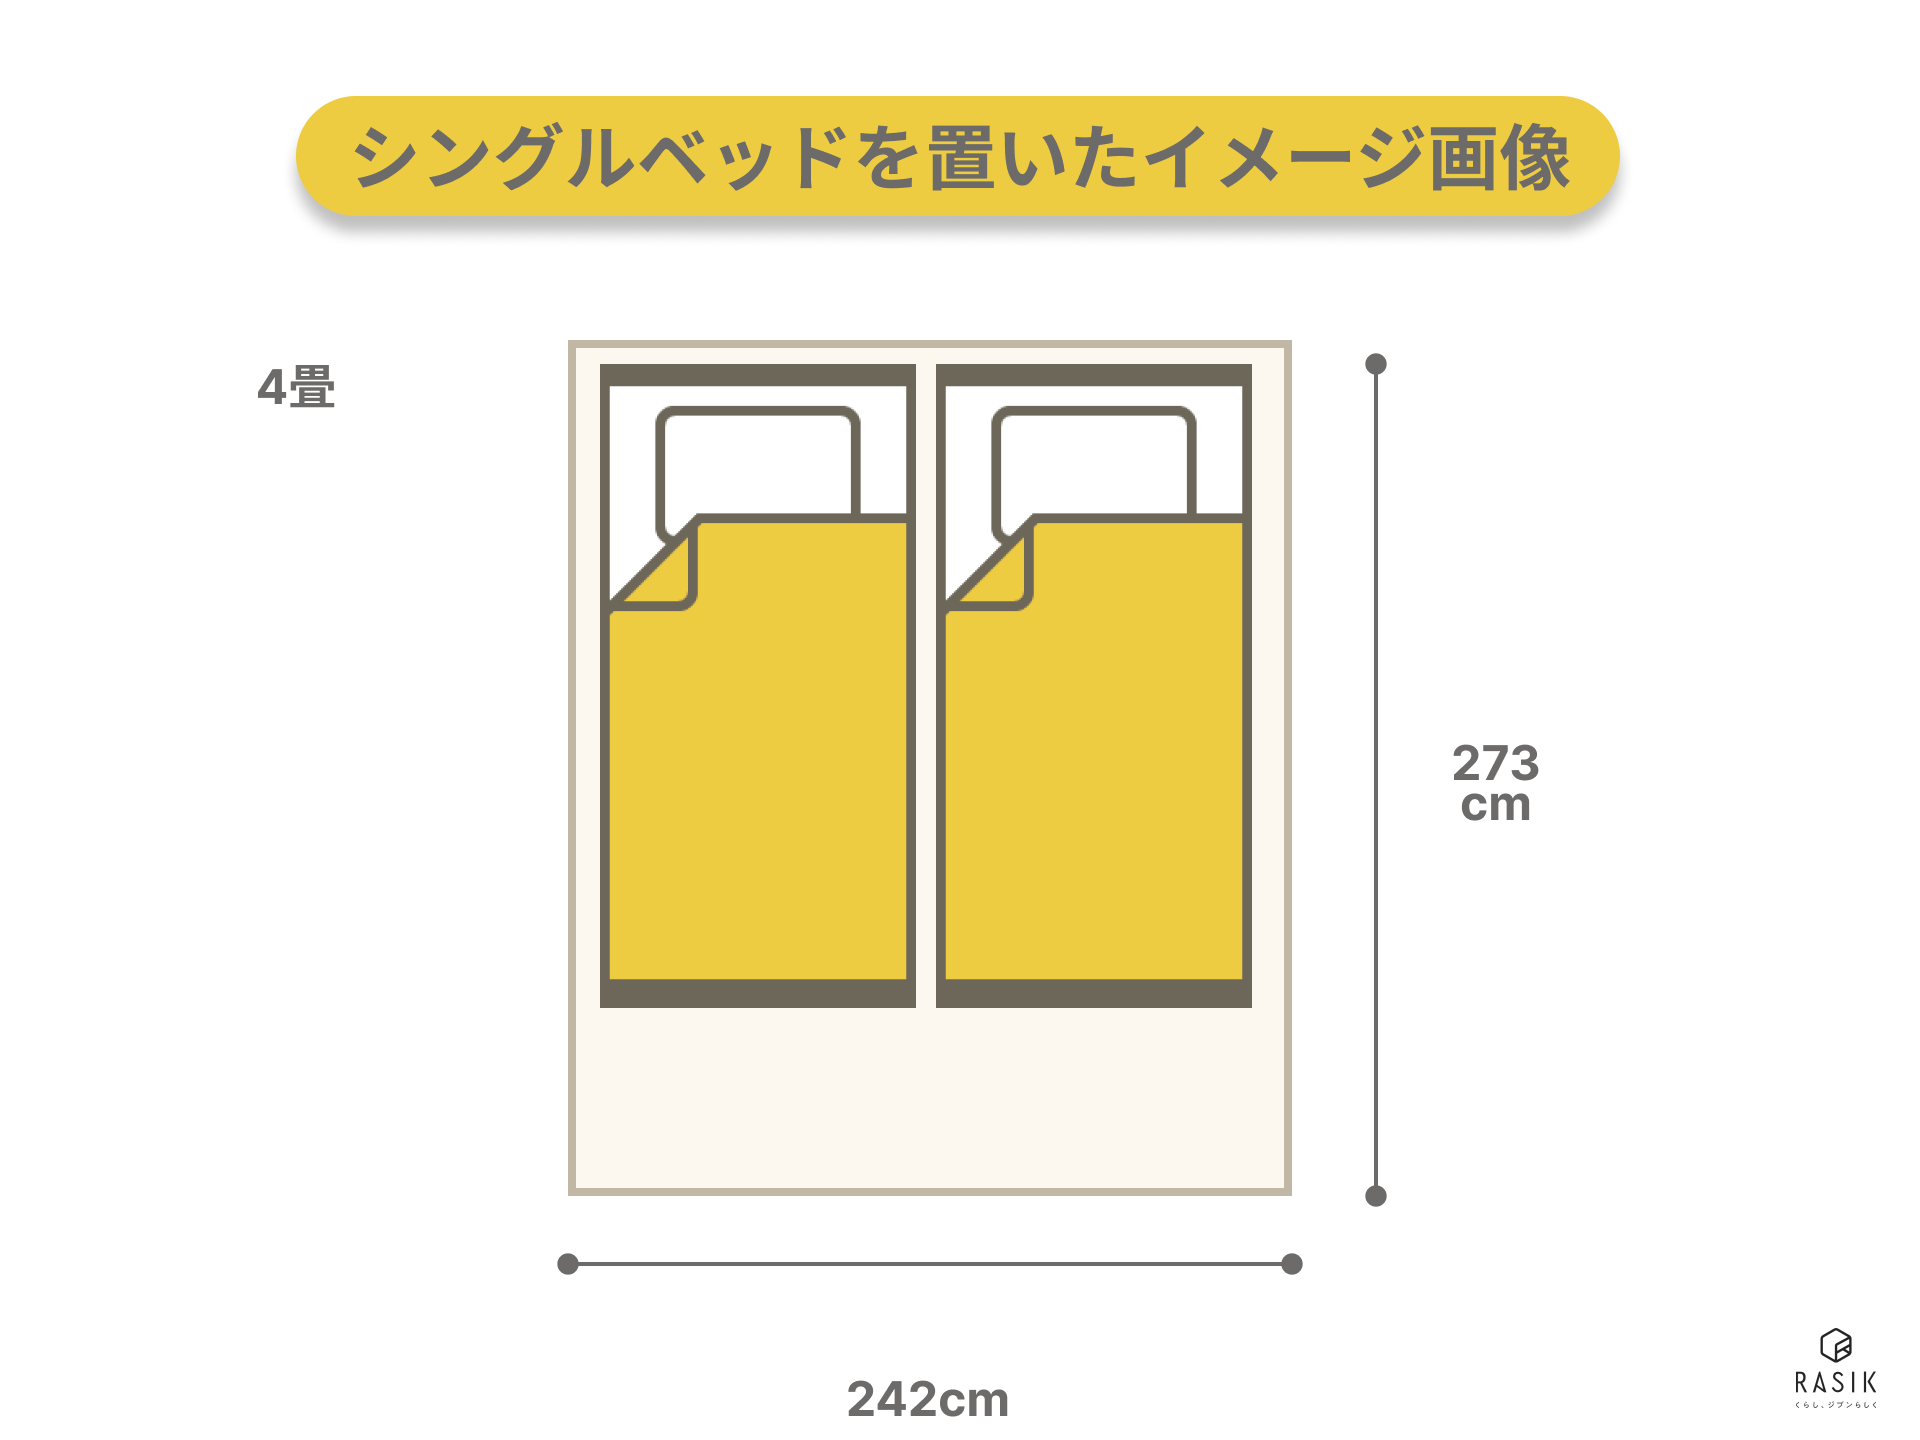 4畳の部屋にシングルベッドを2つ置いたレイアウト例